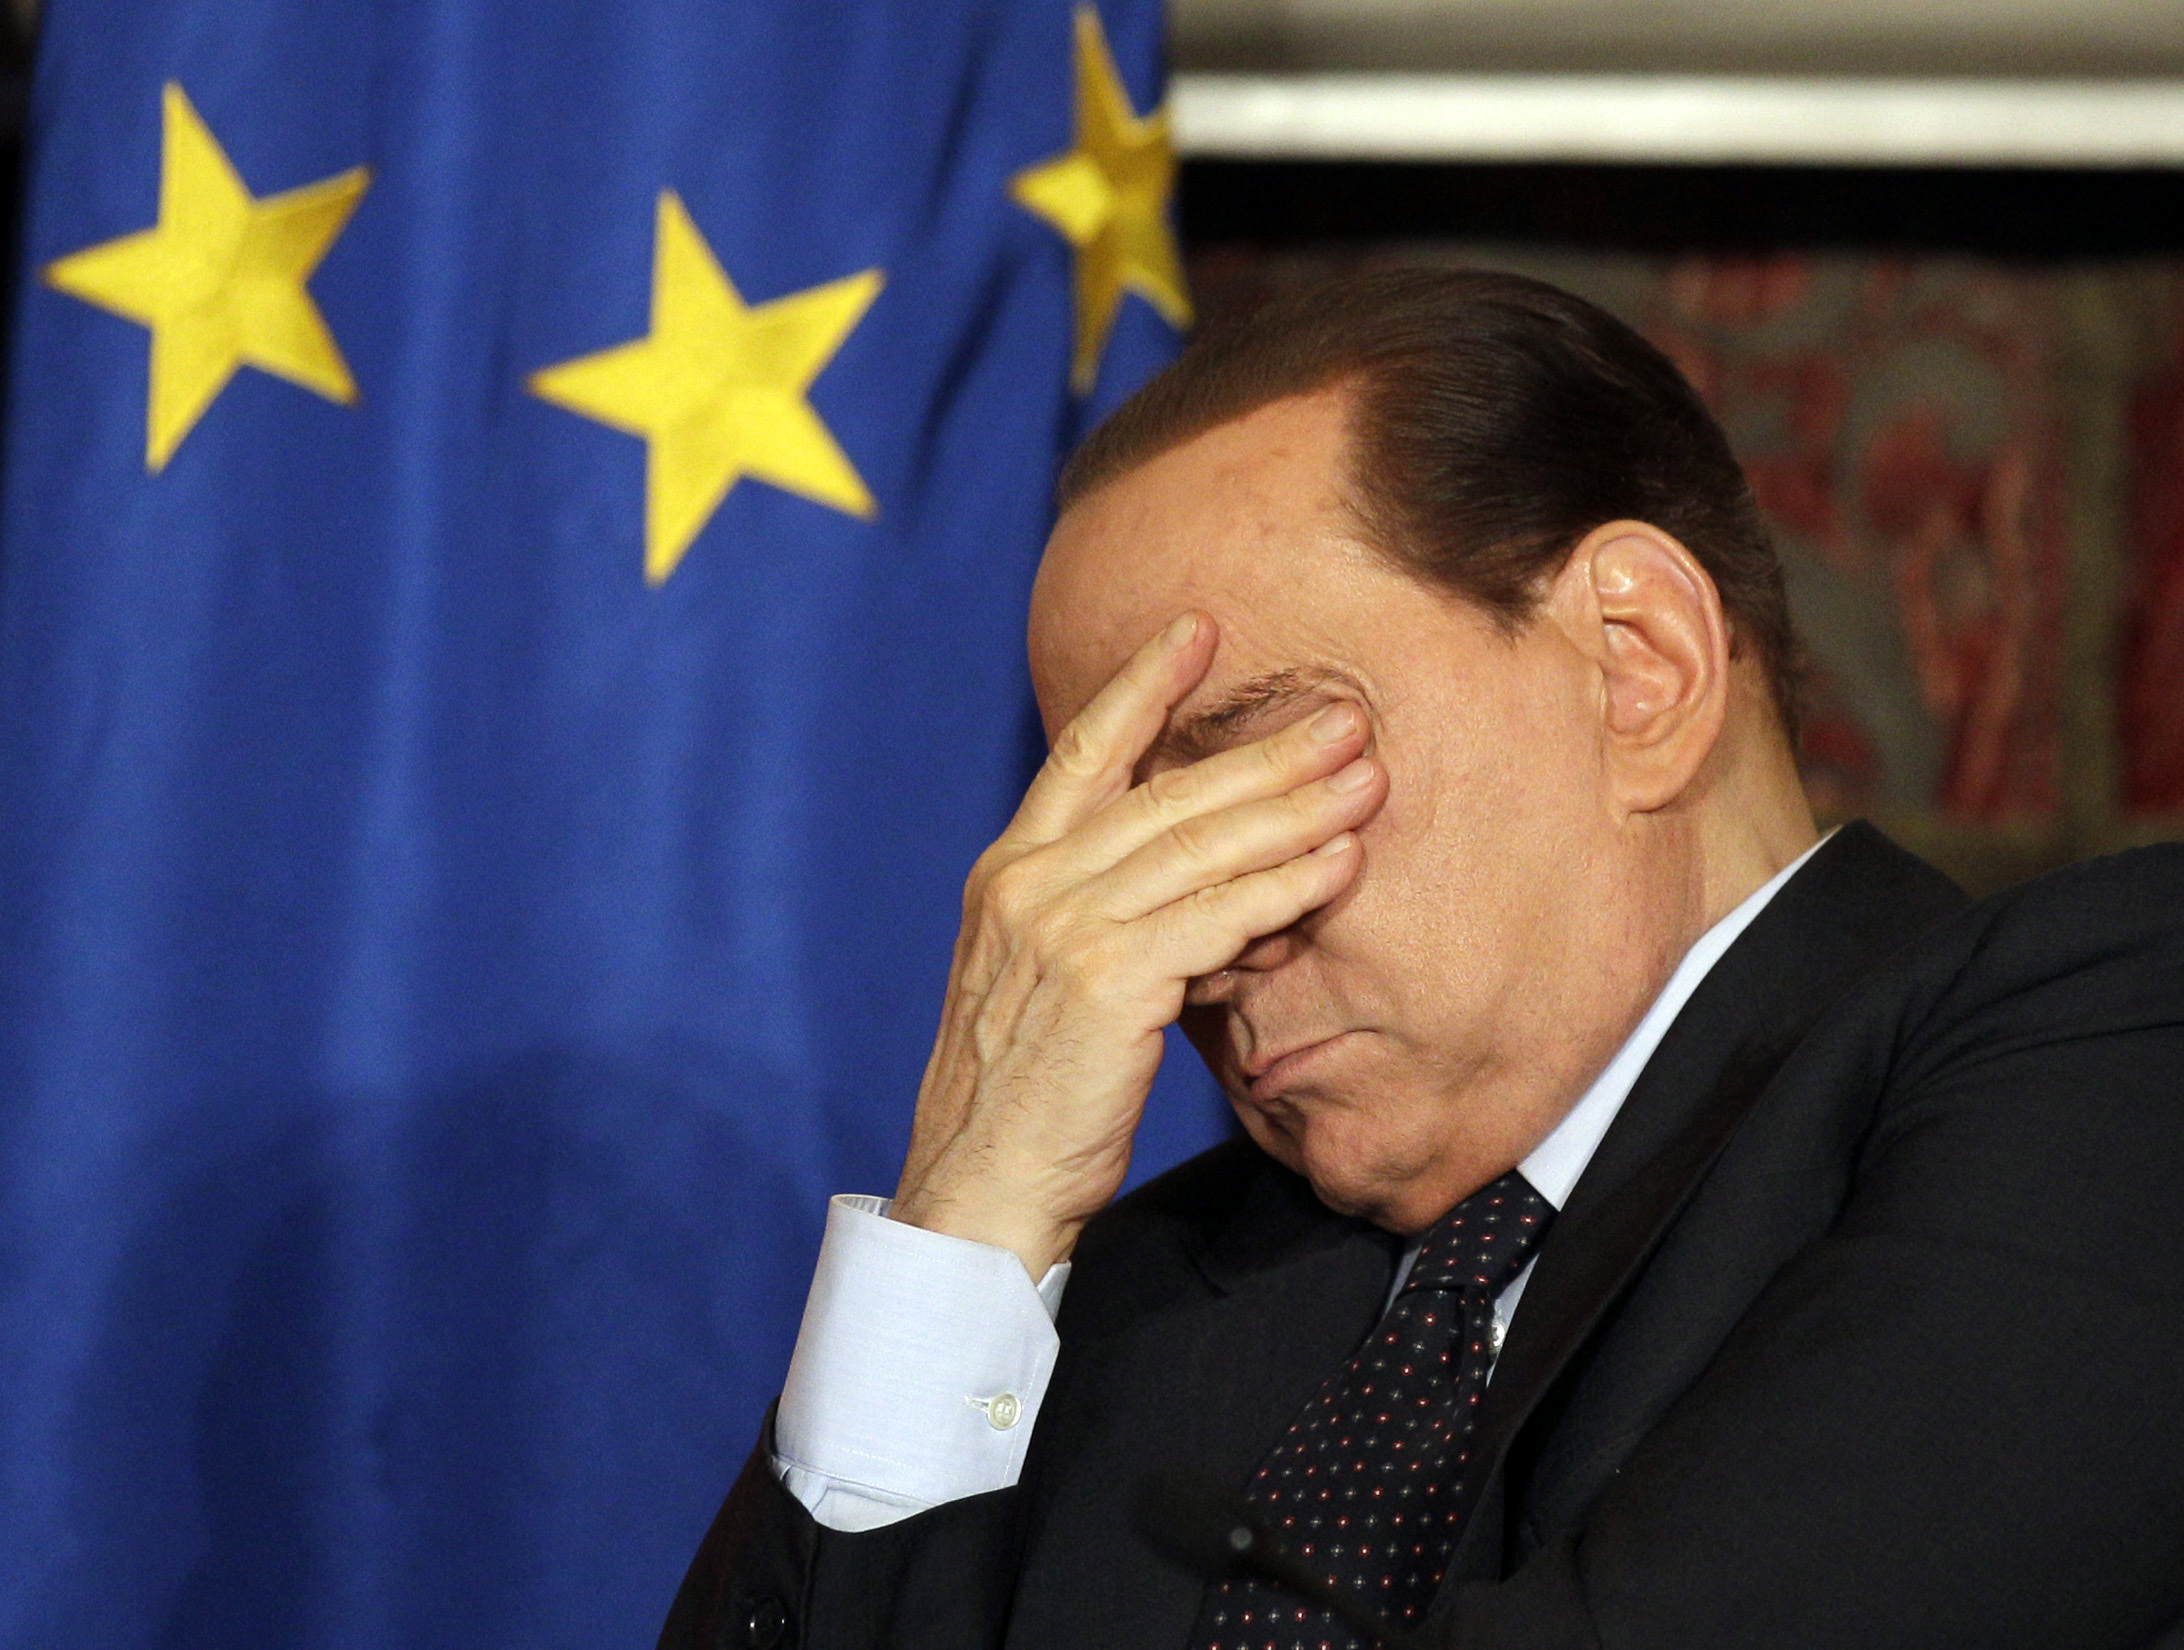 Prostitution, Köp av sexuell tjänst, Silvio Berlusconi, strippa, Italien, Flicka, dans, Burlesk